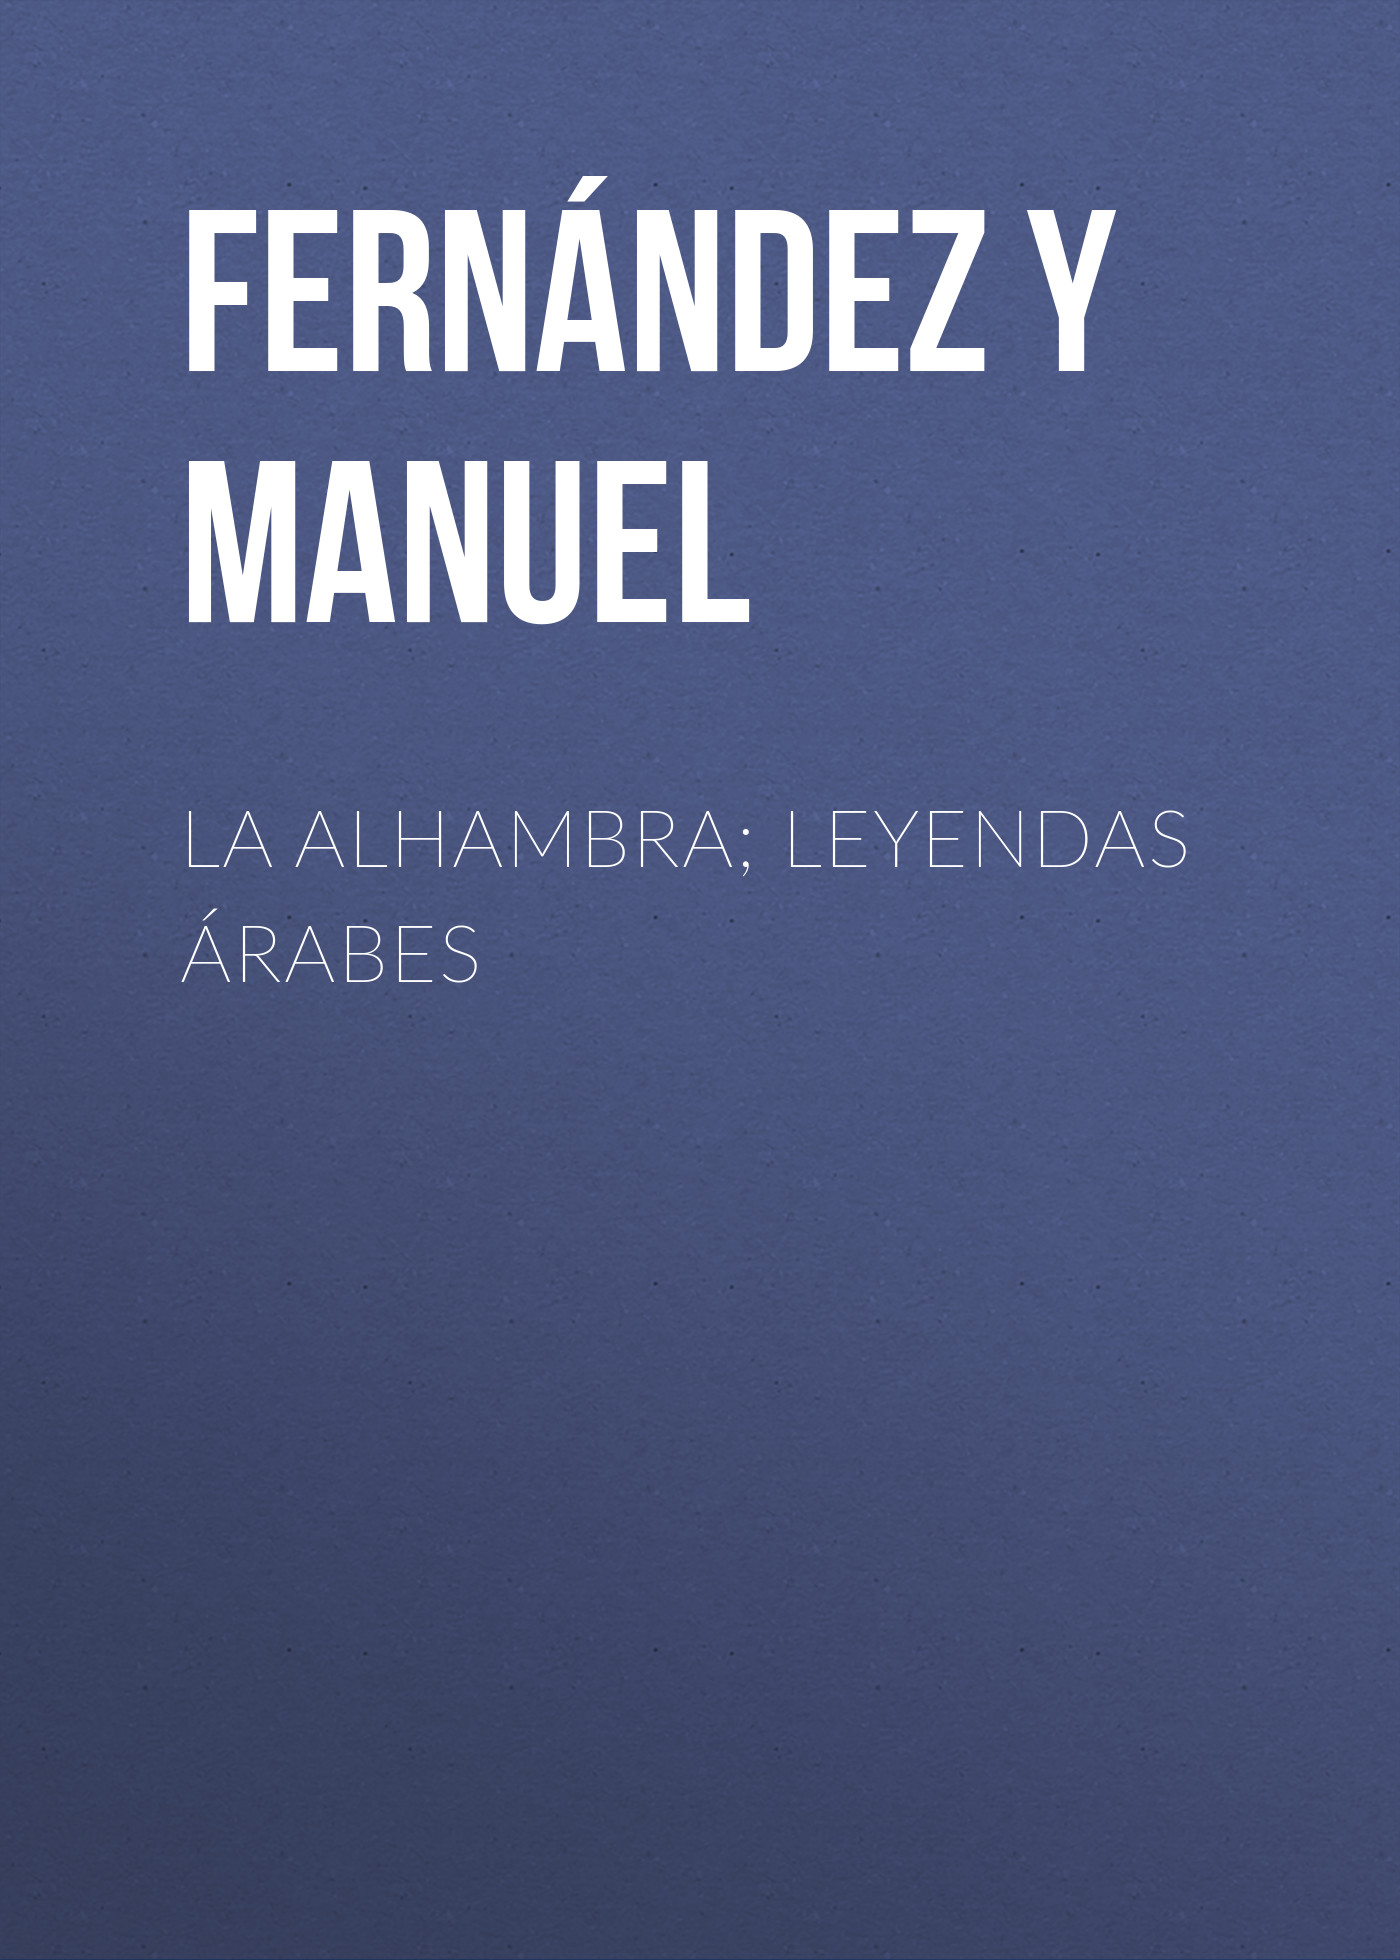 Книга La alhambra; leyendas árabes из серии , созданная Manuel Fernández y González, может относится к жанру Зарубежная старинная литература, Зарубежная классика, Историческая литература. Стоимость электронной книги La alhambra; leyendas árabes с идентификатором 24728537 составляет 0 руб.